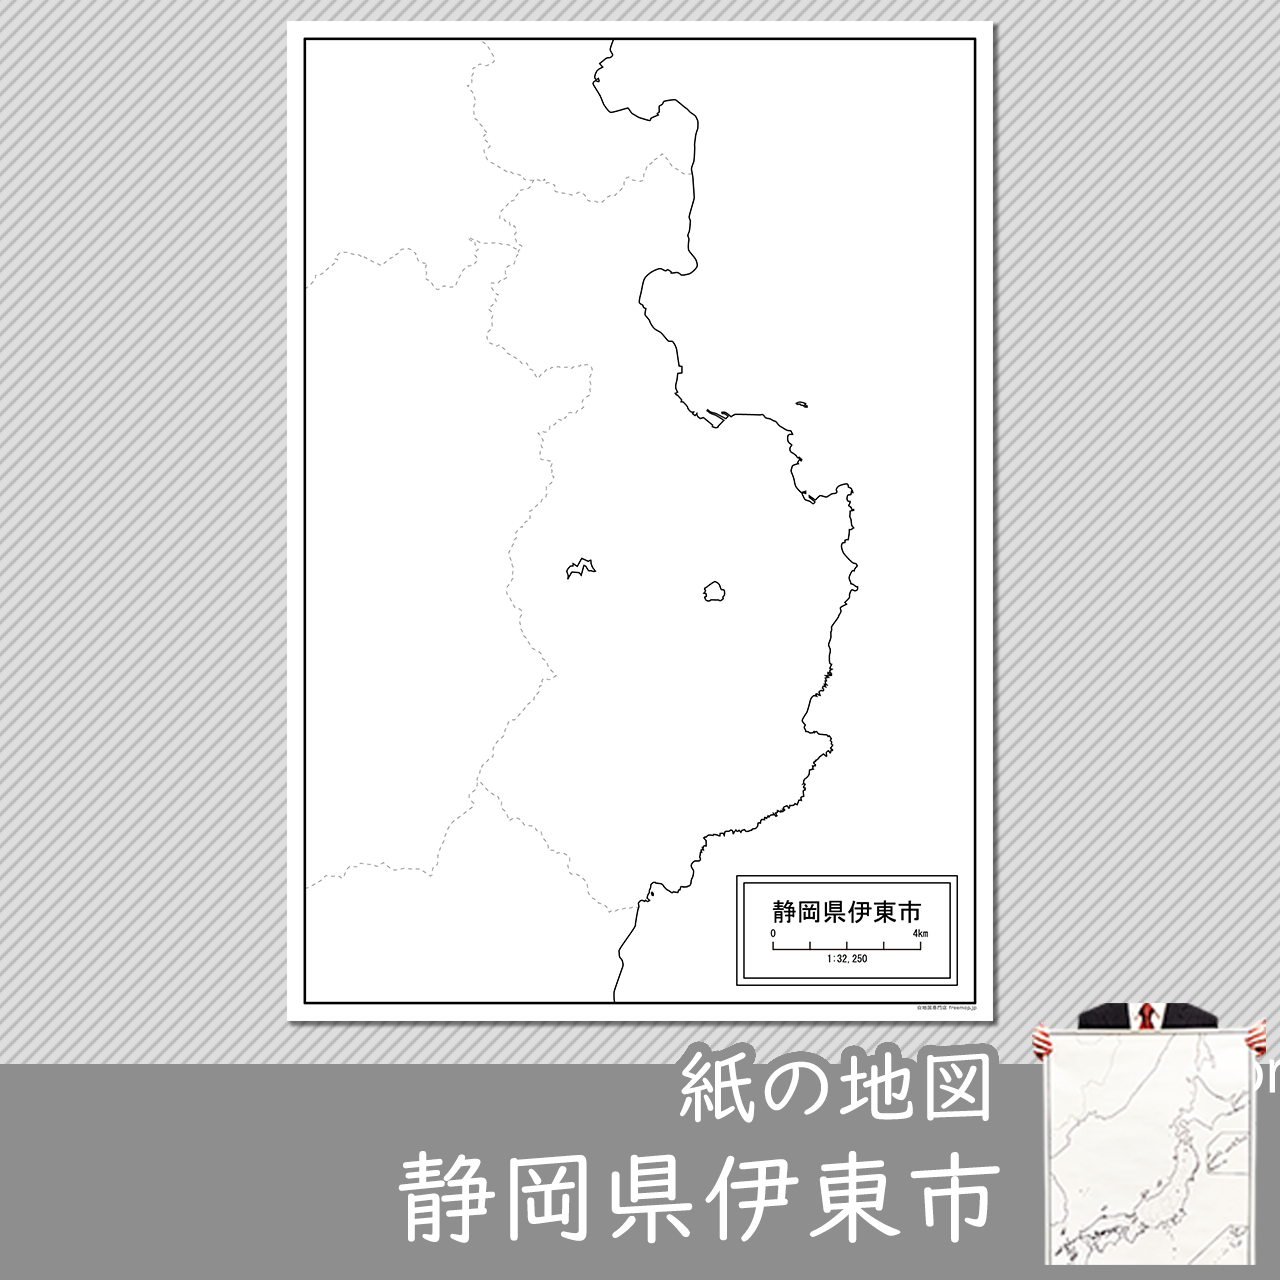 伊東市の紙の白地図のサムネイル